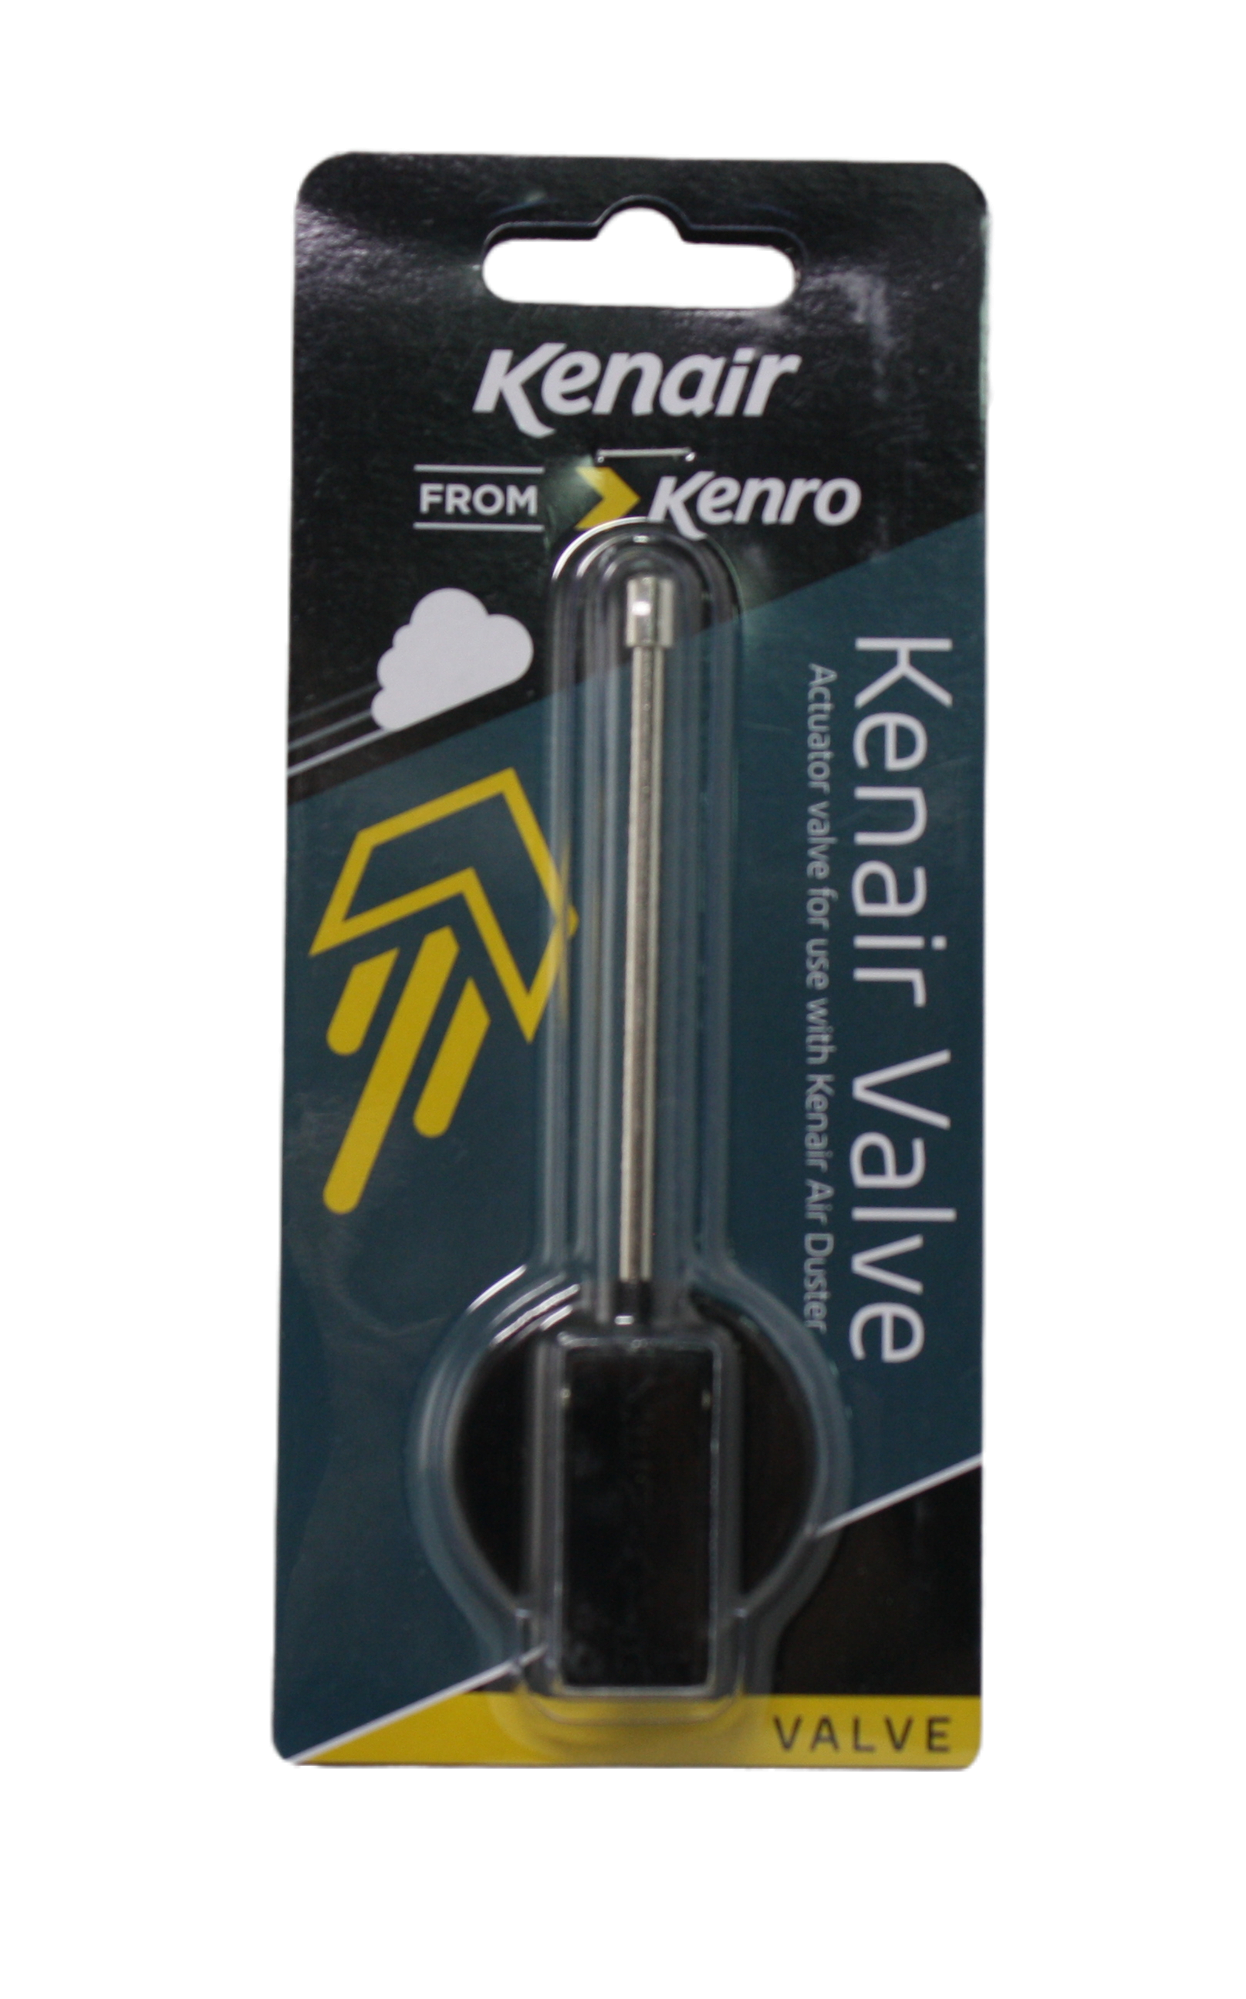 Kenair nozzle, in package